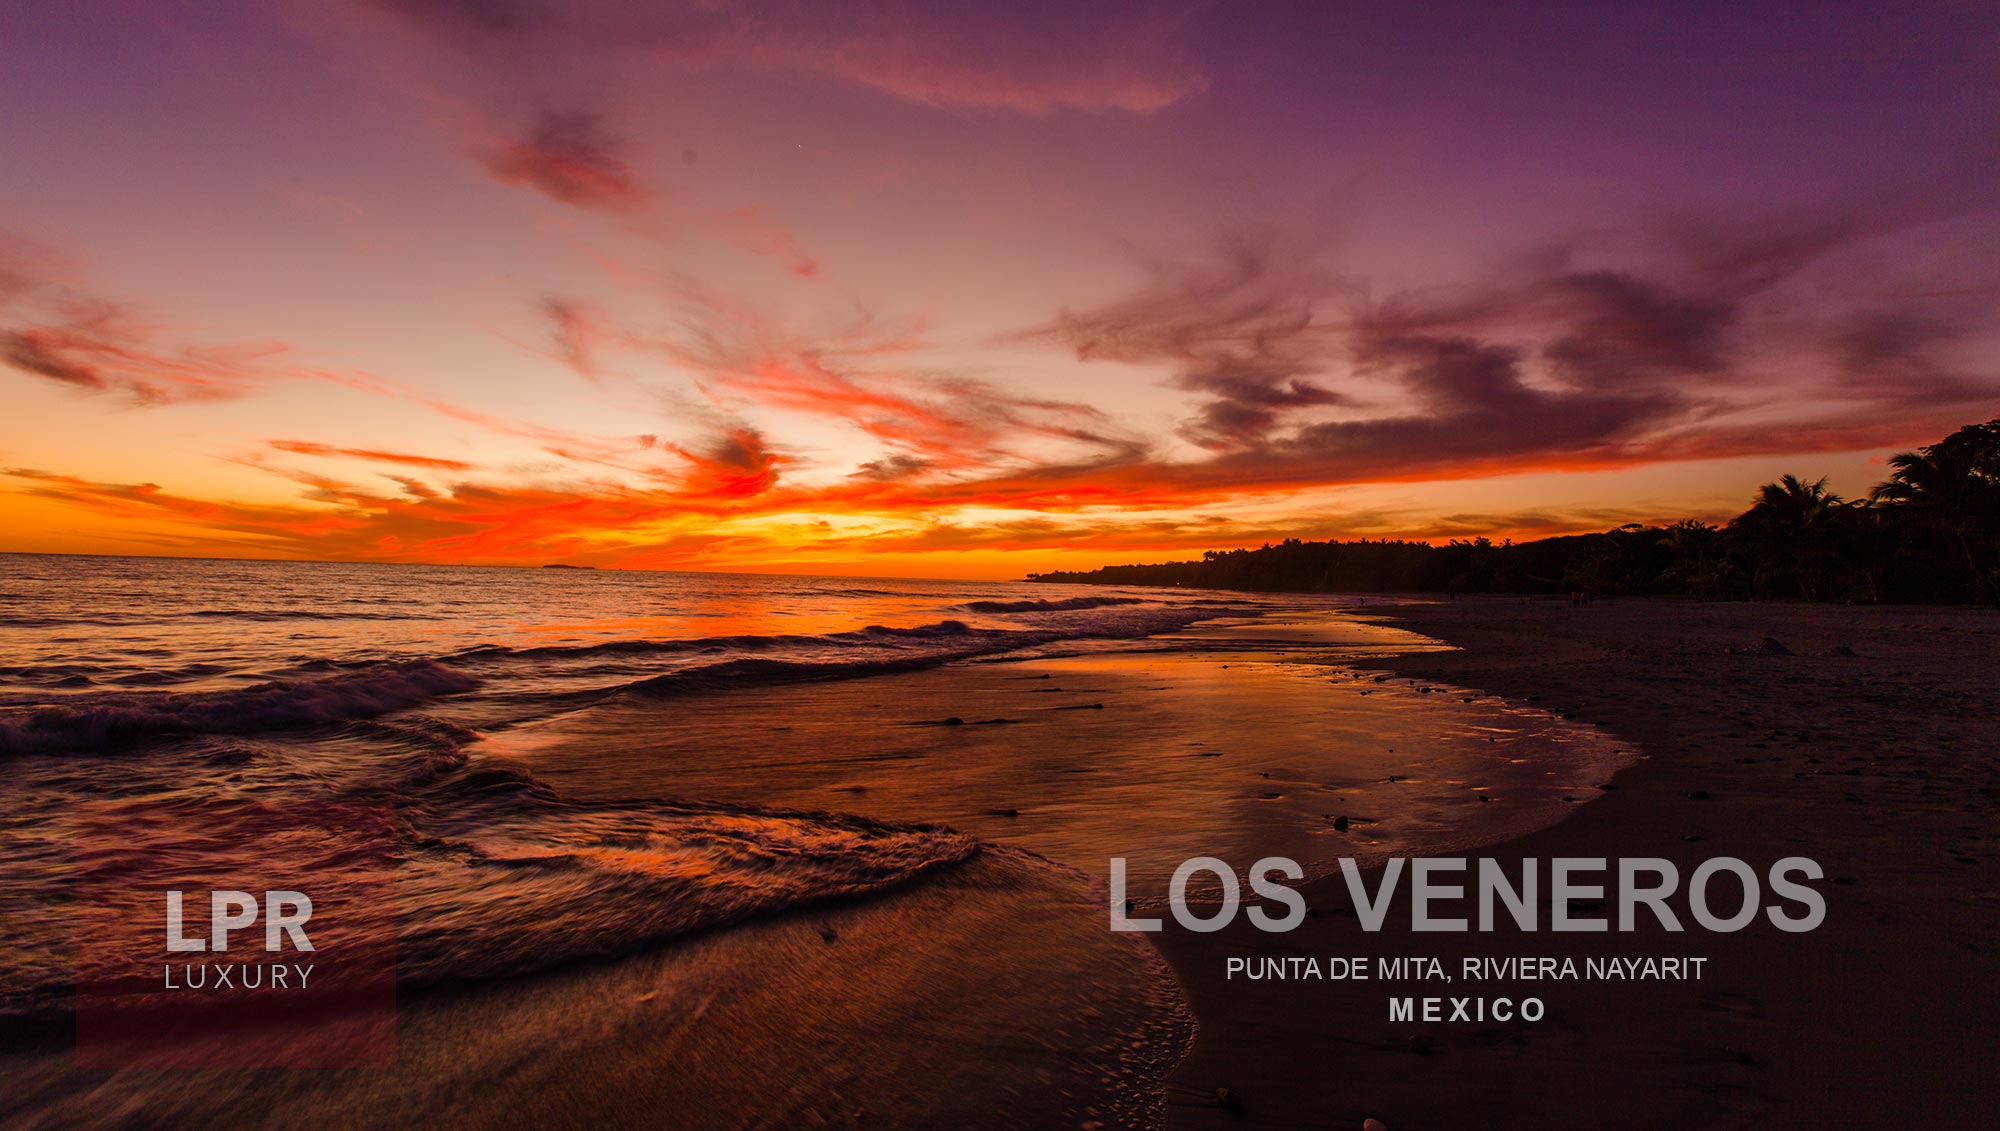 Los Veneros Condos - Luxury Punta de Mita - Puerto Vallarta real estate and vacation rentals - Mexico